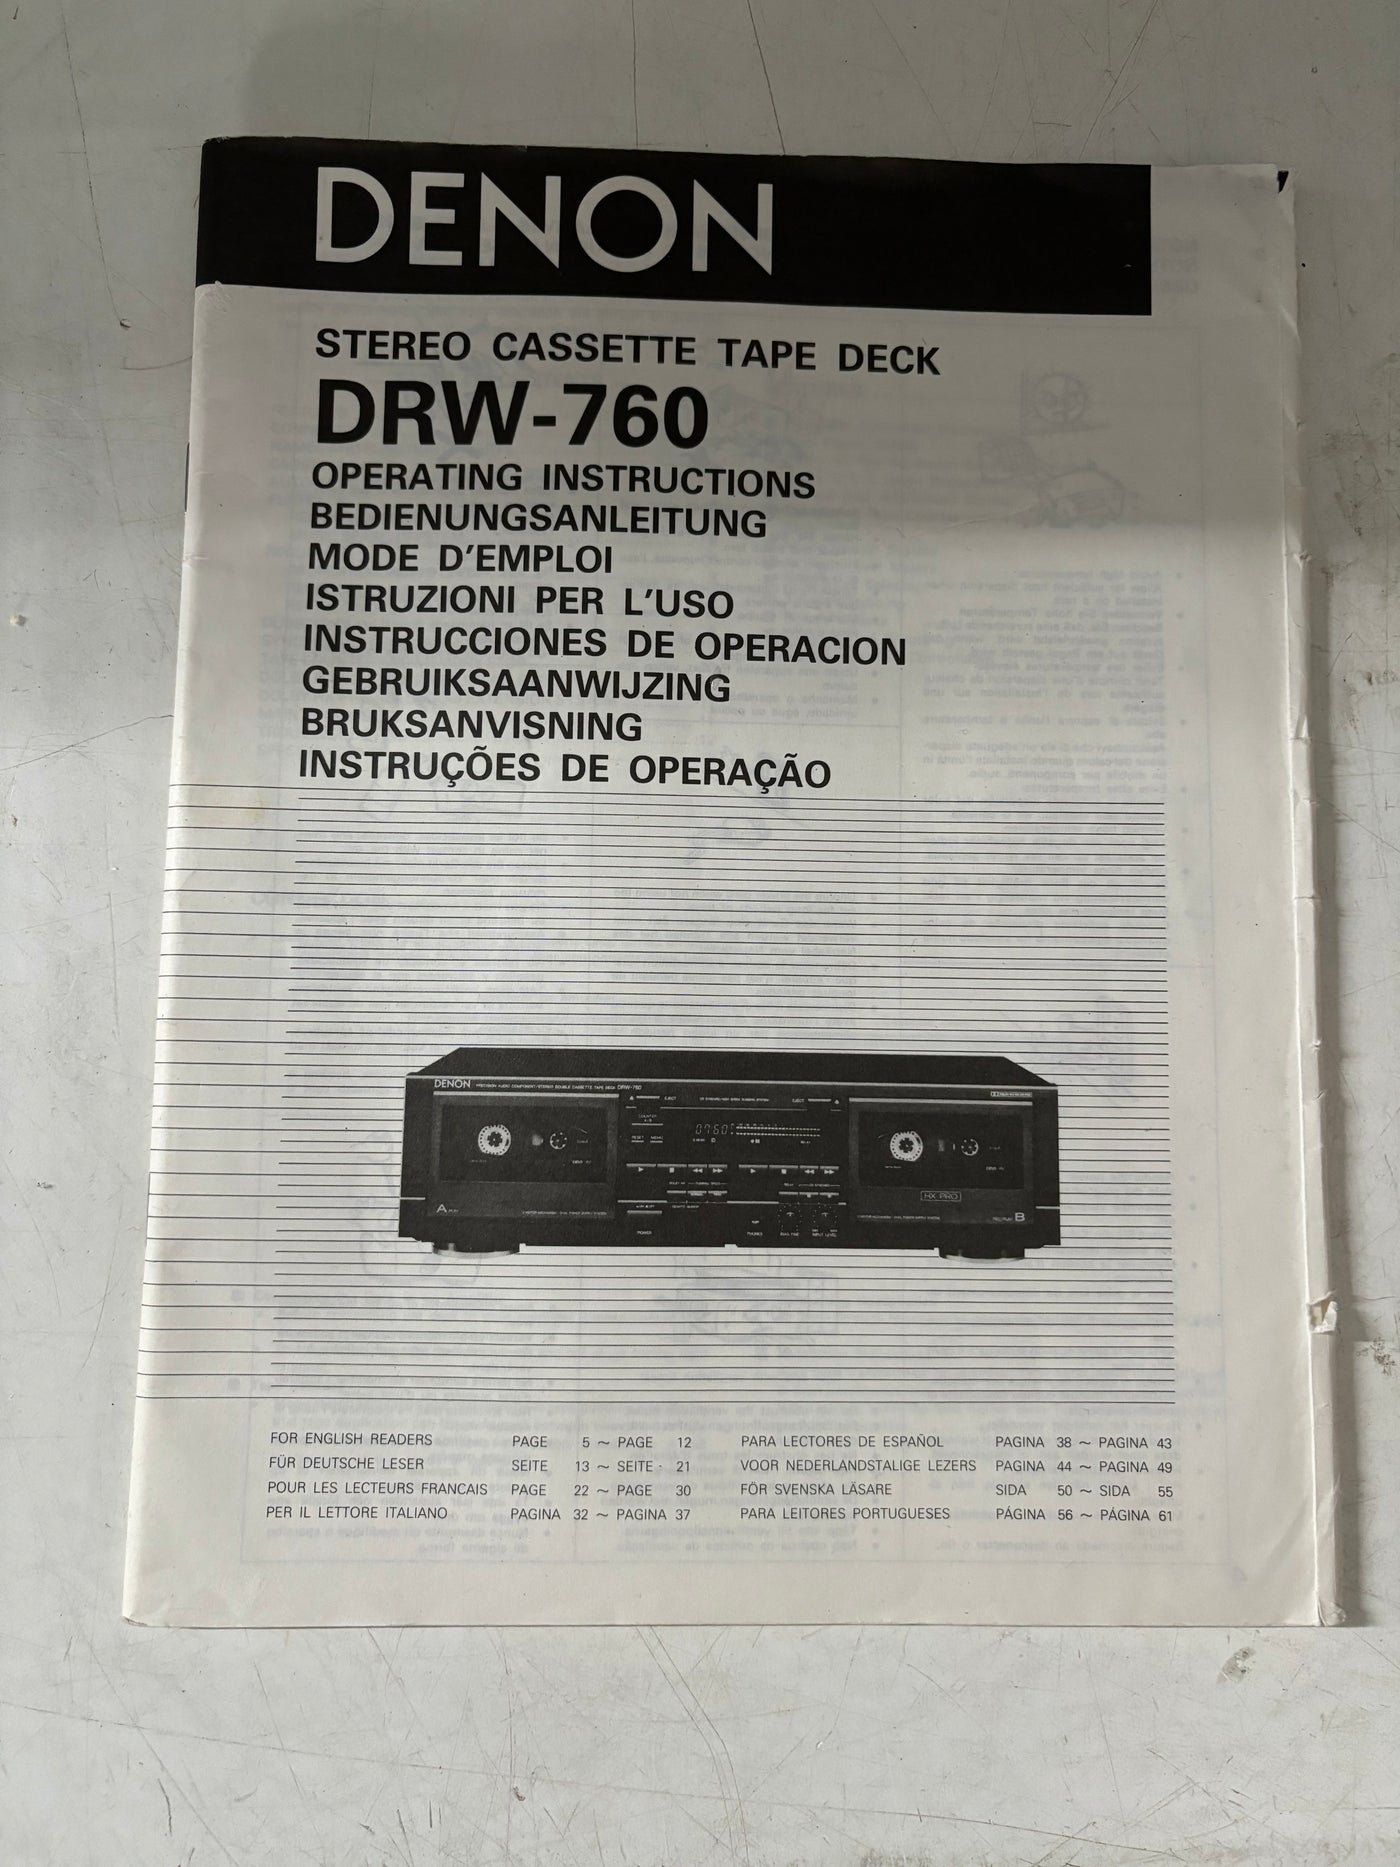 Denon DRW-760 Stereo Cassette Tape Deck User Manual